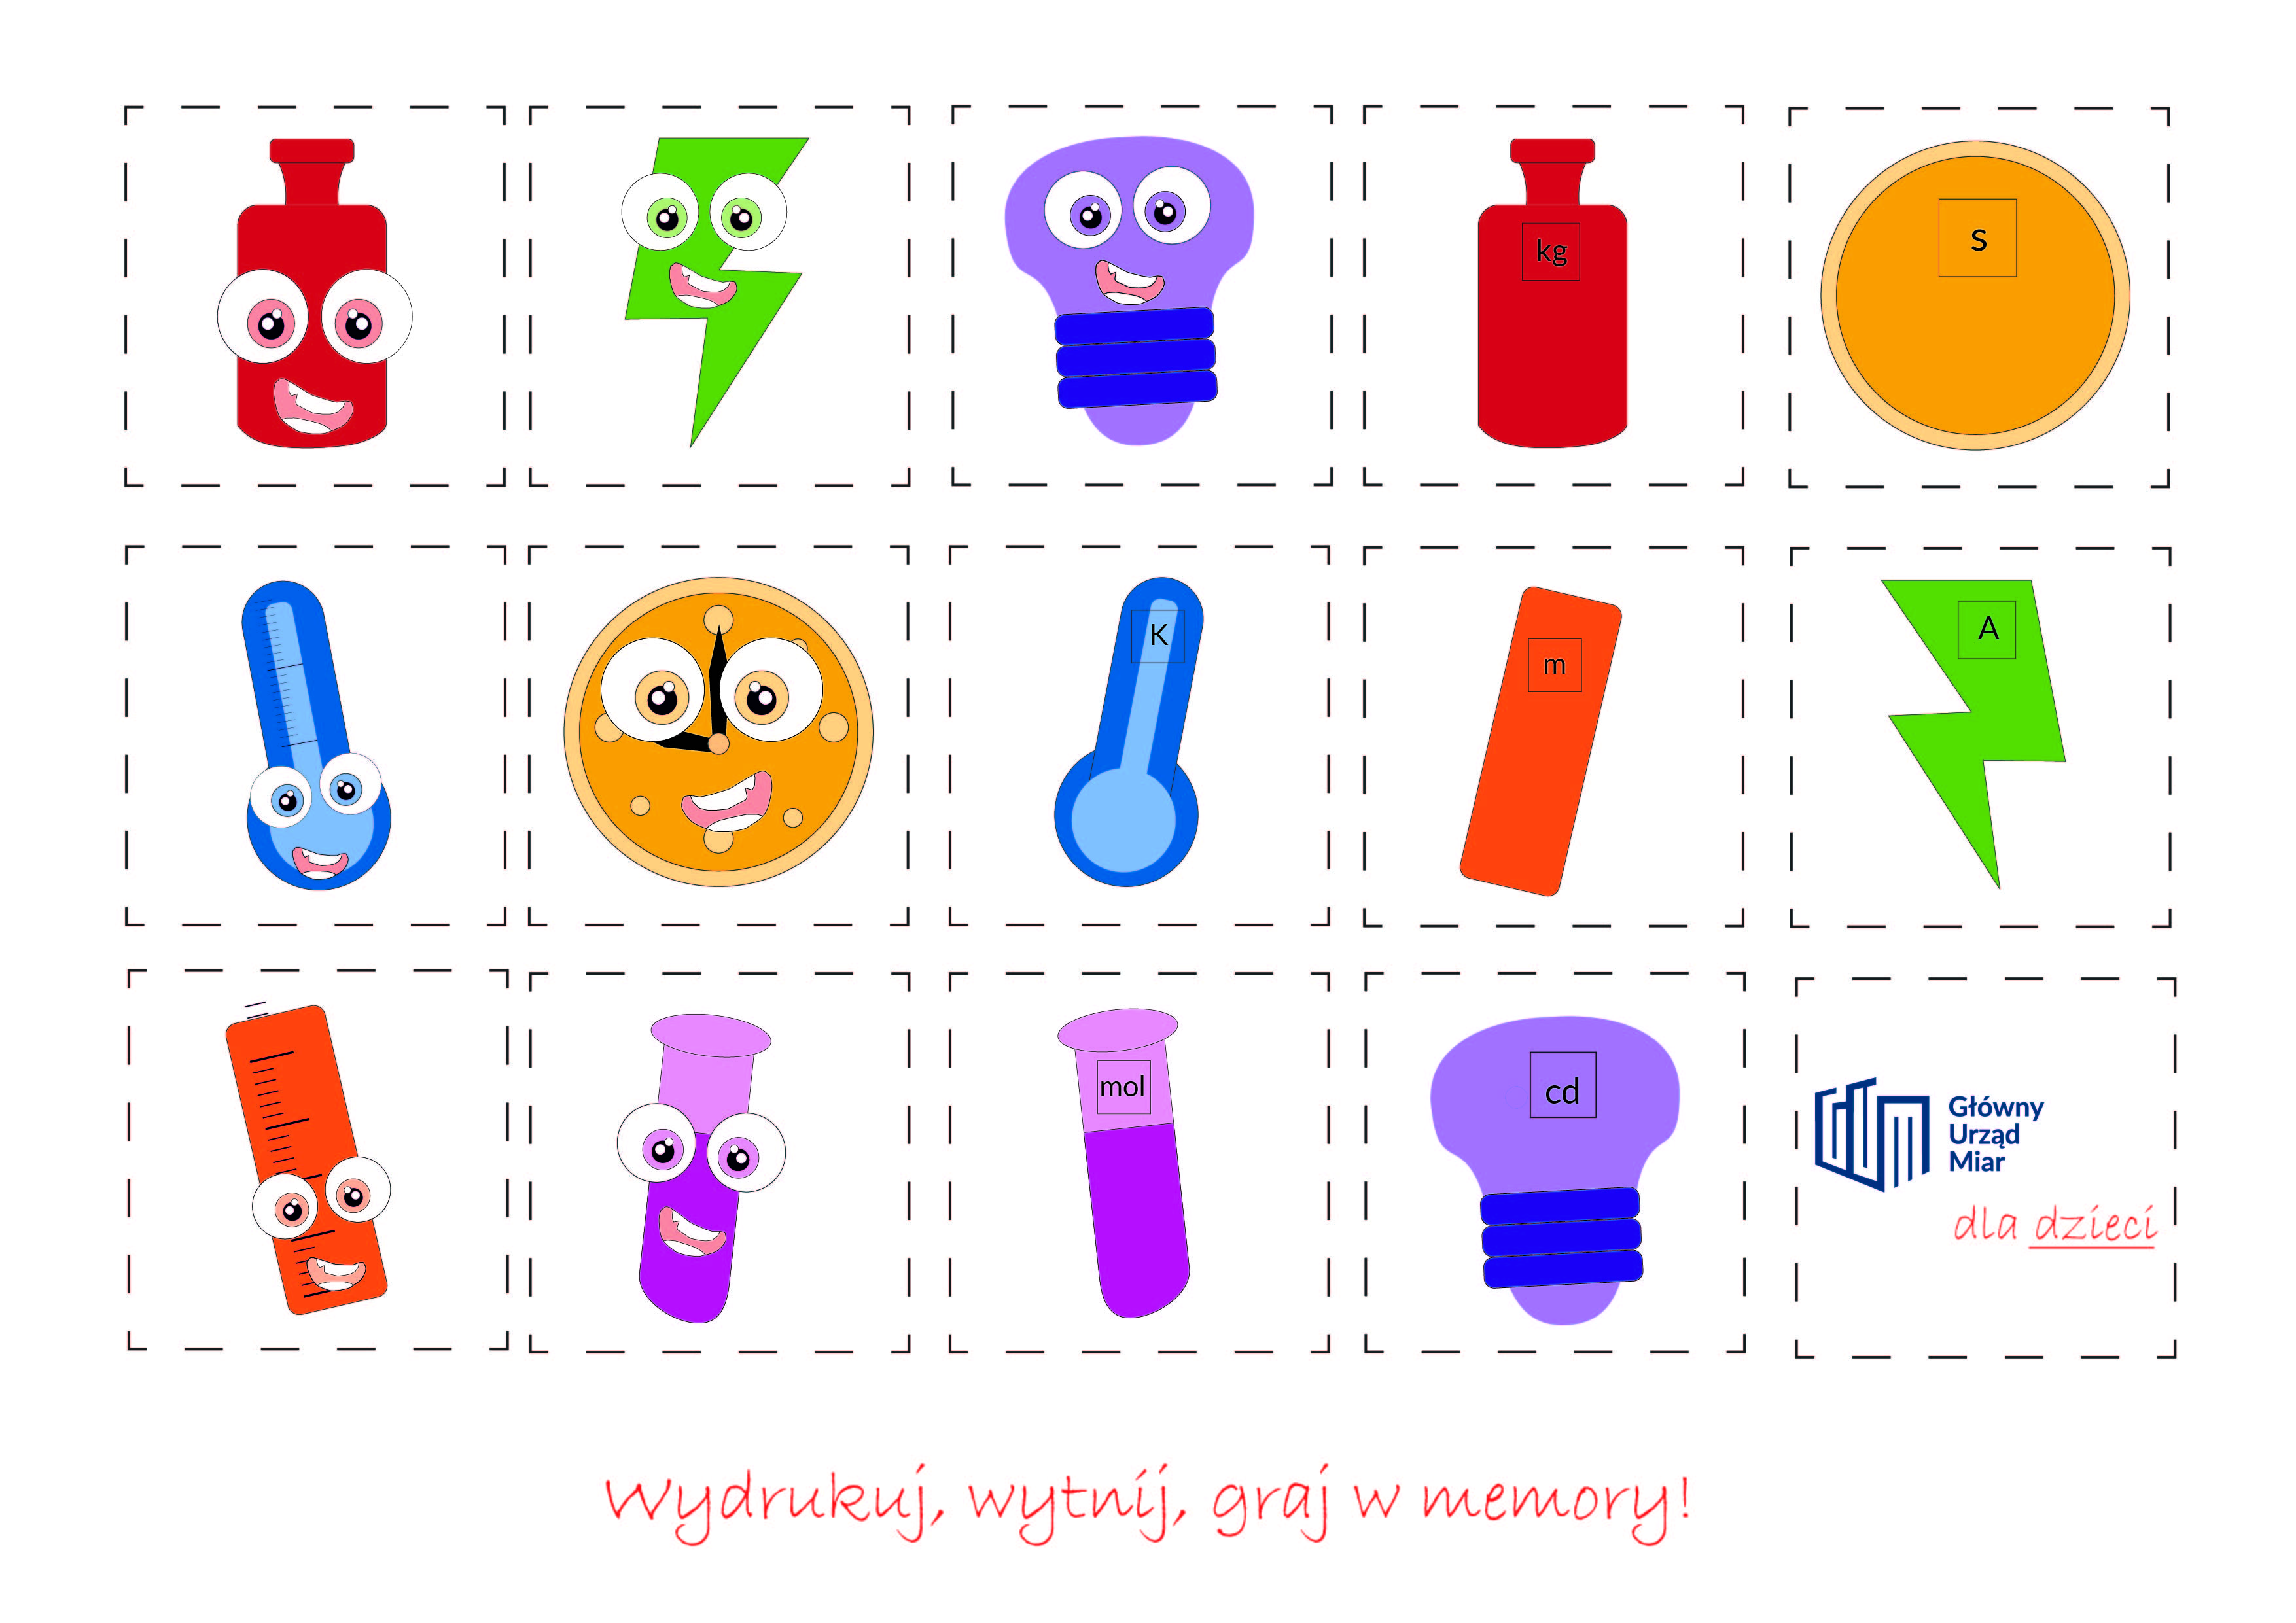 W kwadracie umieszczonych jest 15 ikonek dla dzieci, symbolizujących jednostki miar: między innymi odważnik - kilogram, termometr - kelwin, żarówka - kandela i inne. Pod ikonkami napis: Wydrukuj, wytnij, graj w memory! 